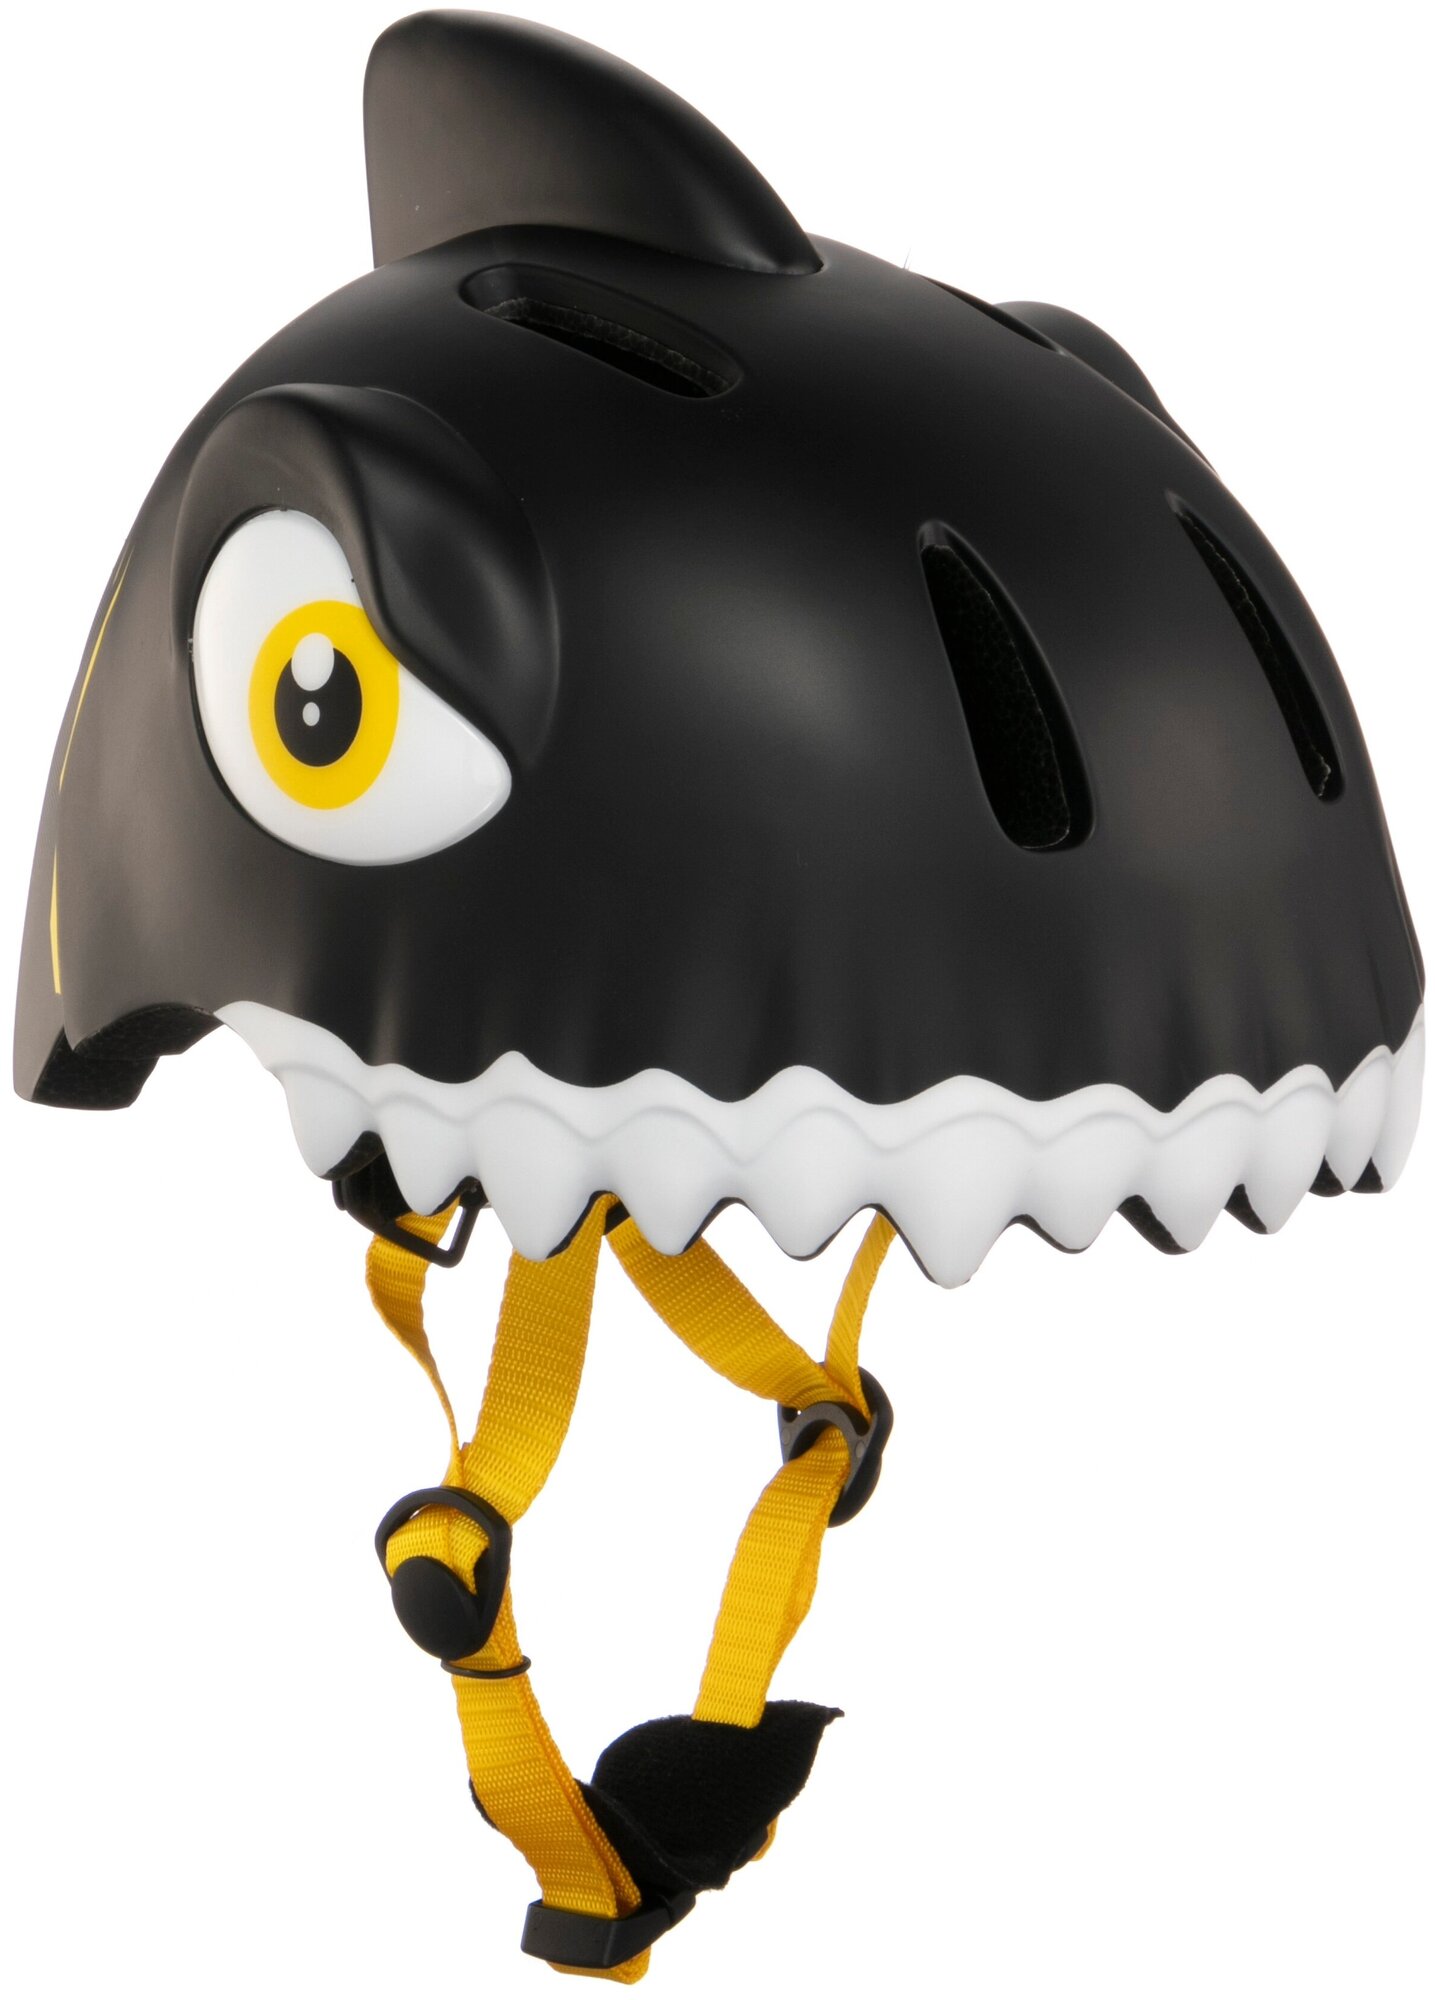 Шлем - Crazy Safety - размер S-M (49-55 см) - Black Shark/черная акула - защитный - велосипедный велошлем детский